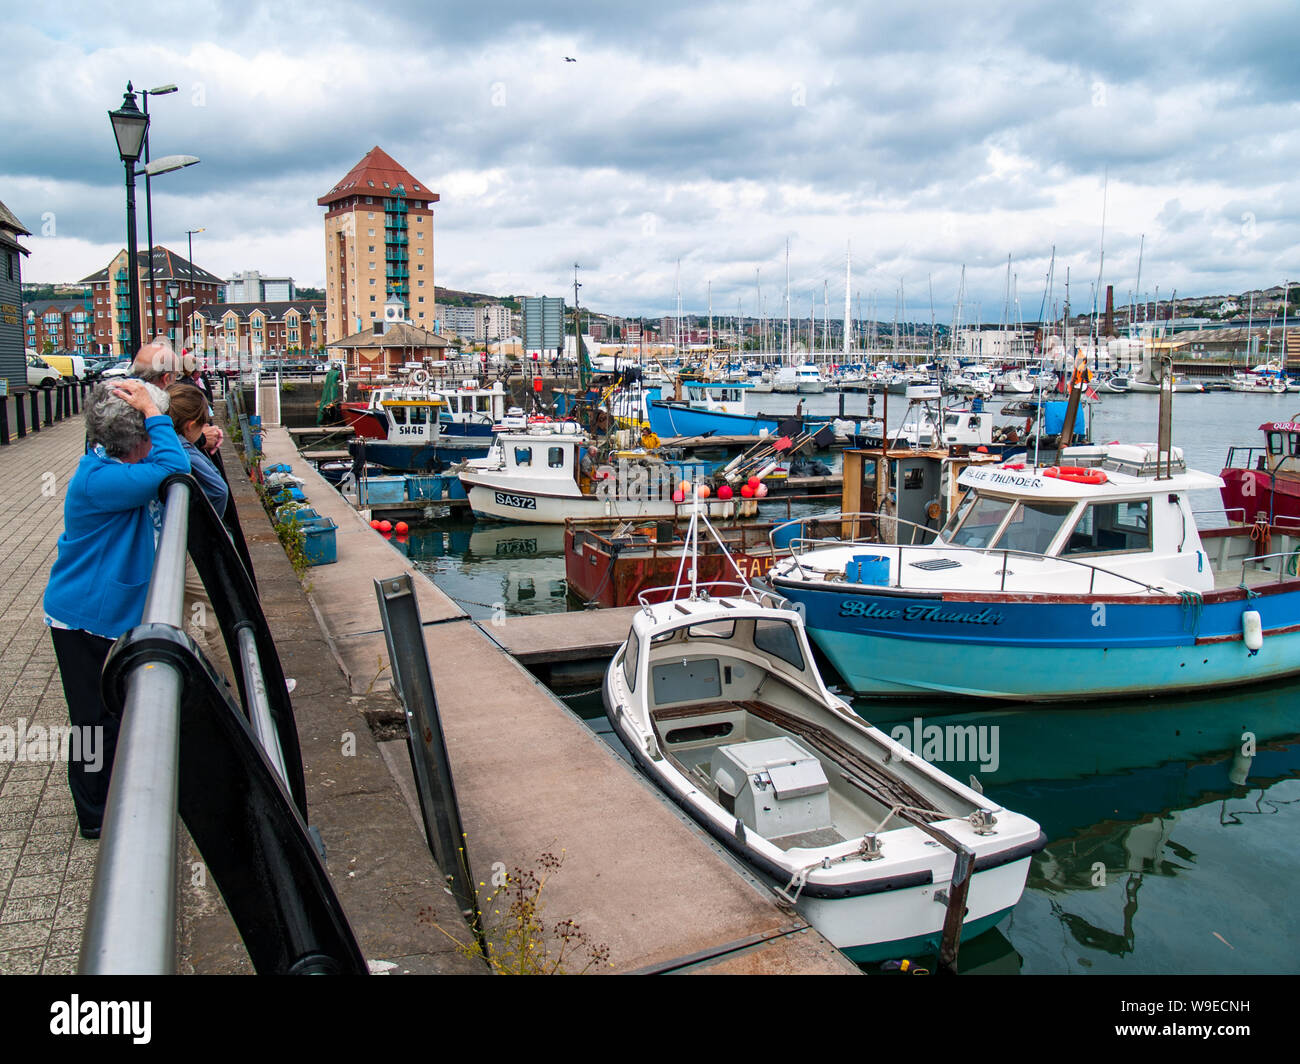 Dunstaffnage marina à la voile vers le pont. Bateaux de pêche peut être vu dans l'avant-plan et les bateaux et yachts privés vers le pont. Pays de Galles, Royaume-Uni Banque D'Images